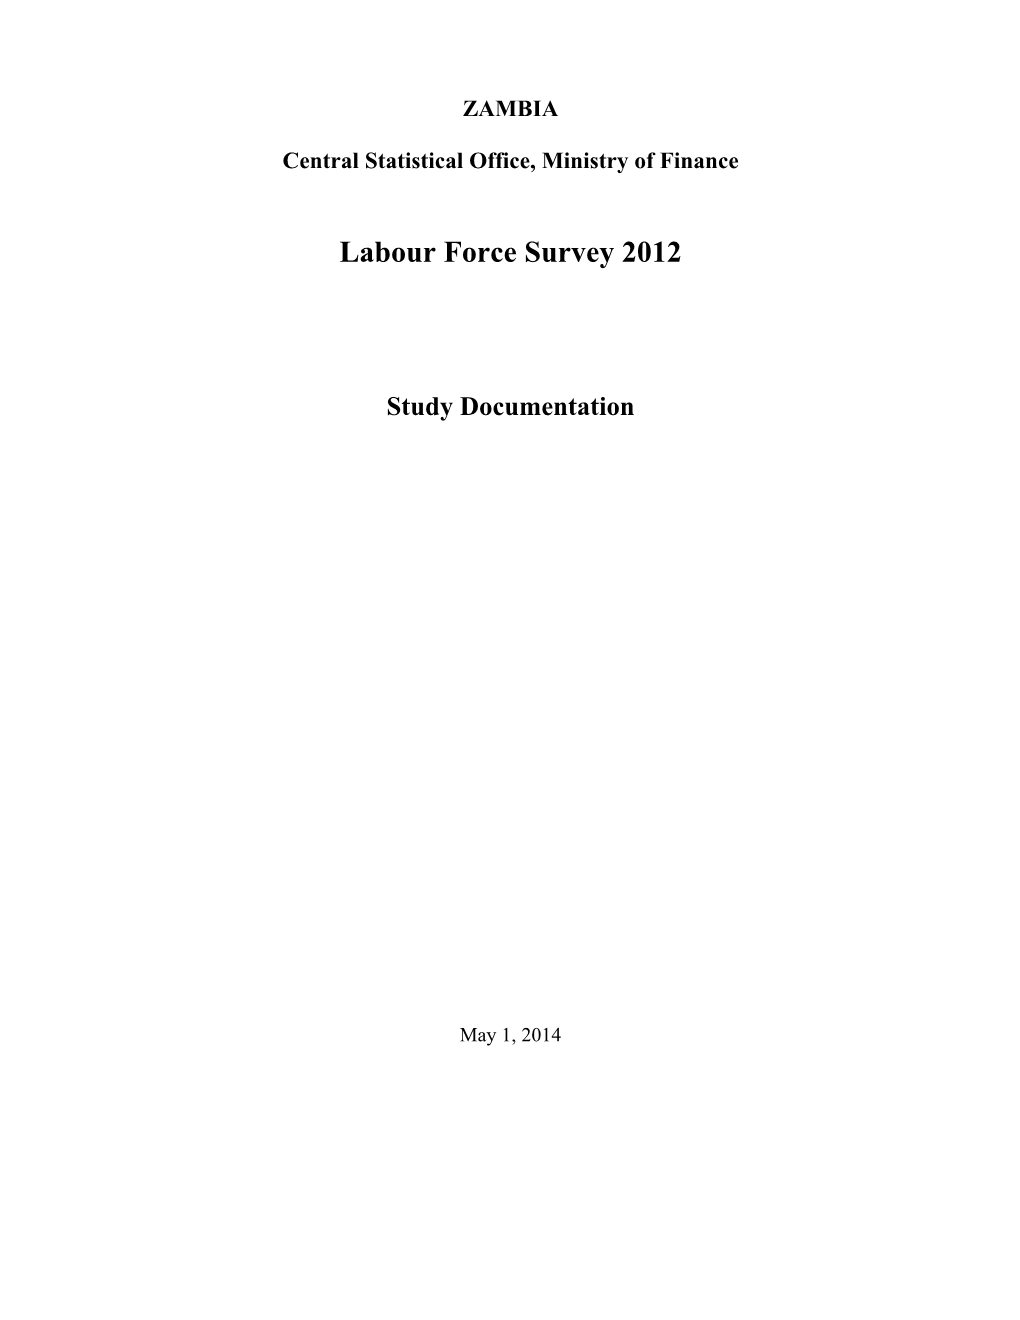 Labour Force Survey 2012